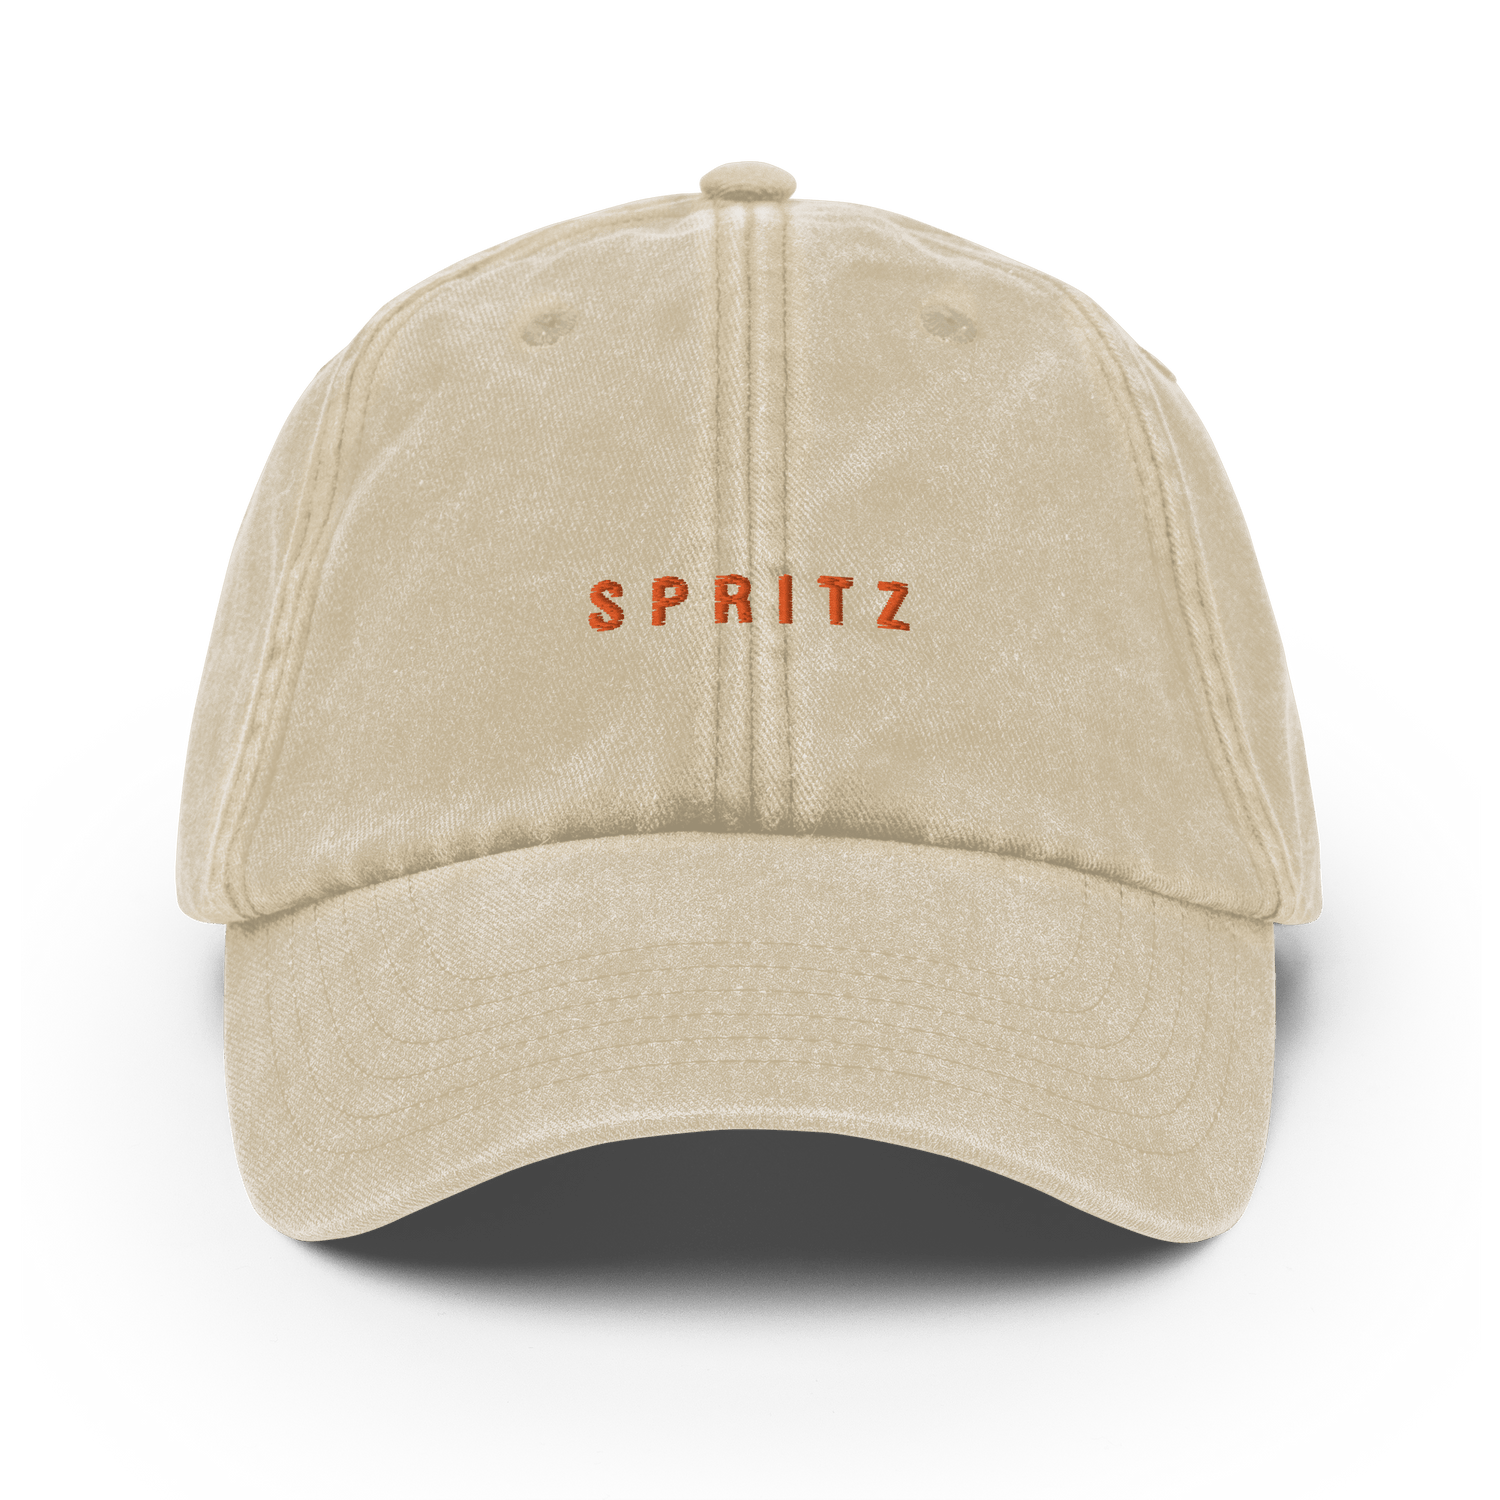 The Spritz Vintage Hat